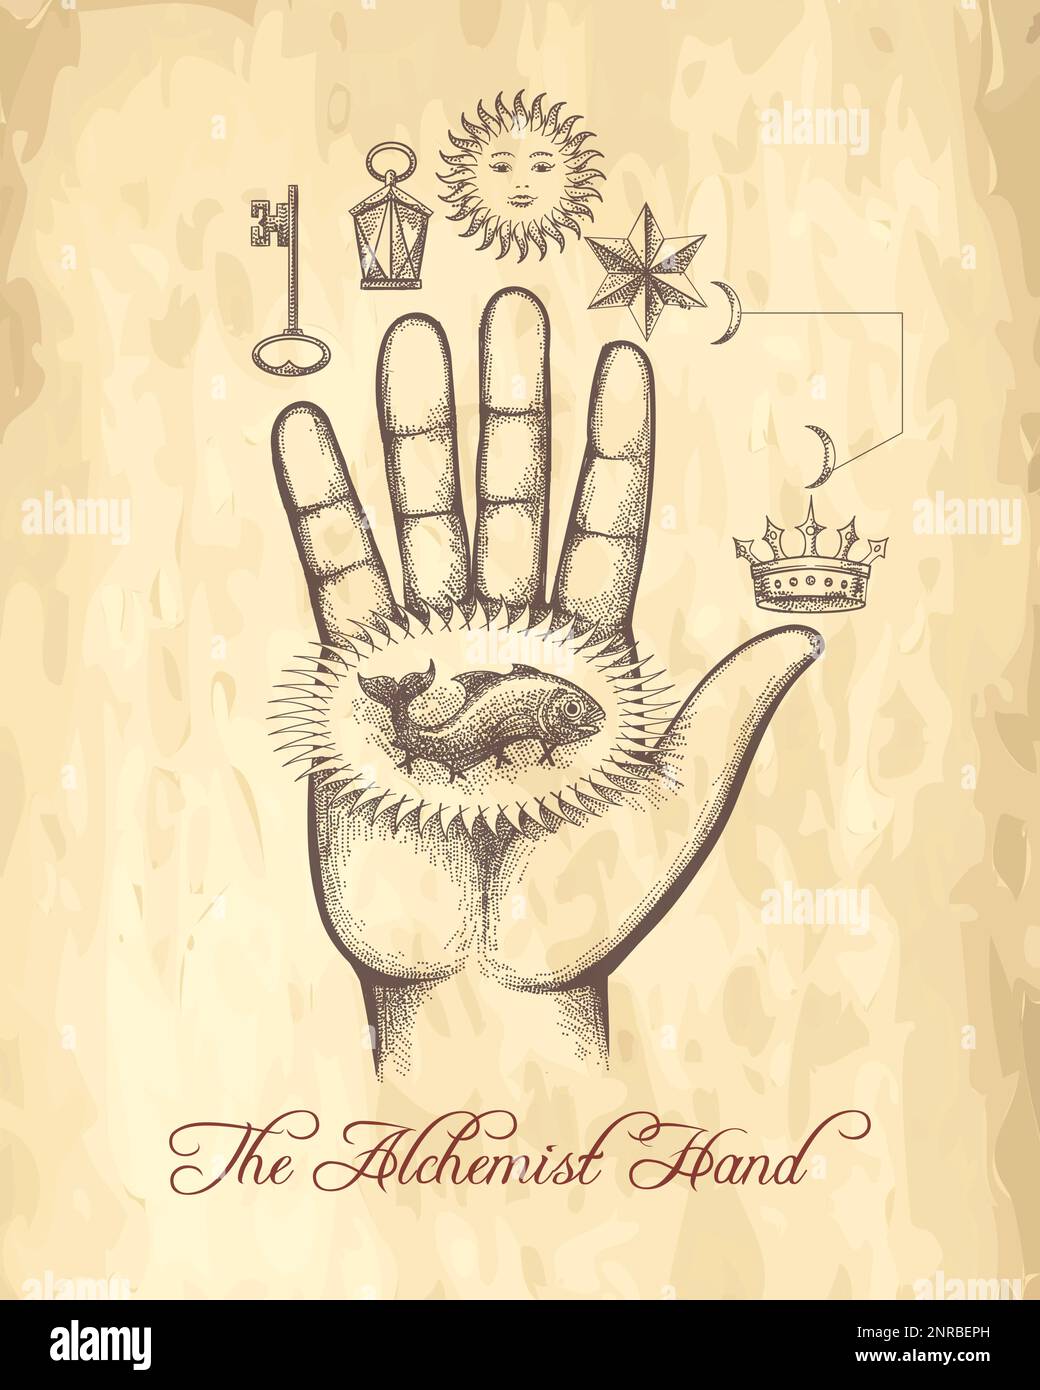 Emblem ésotérique de la paume humaine avec des signes d'alchimie sur fond de papier ancien. Illustration vectorielle. Illustration de Vecteur